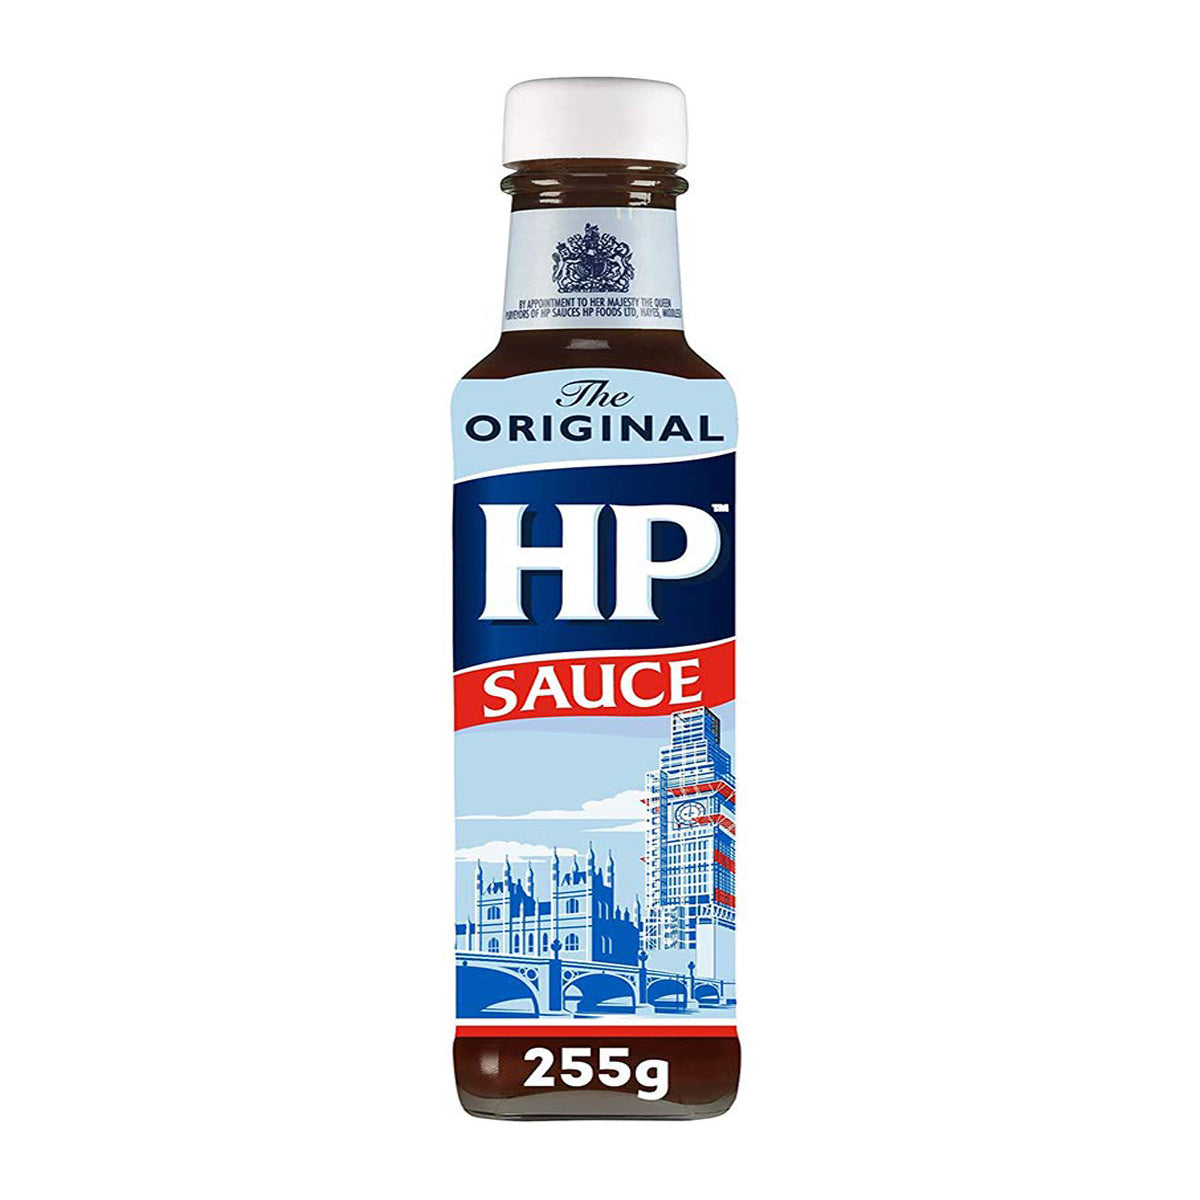 HP Original Sauce 255g